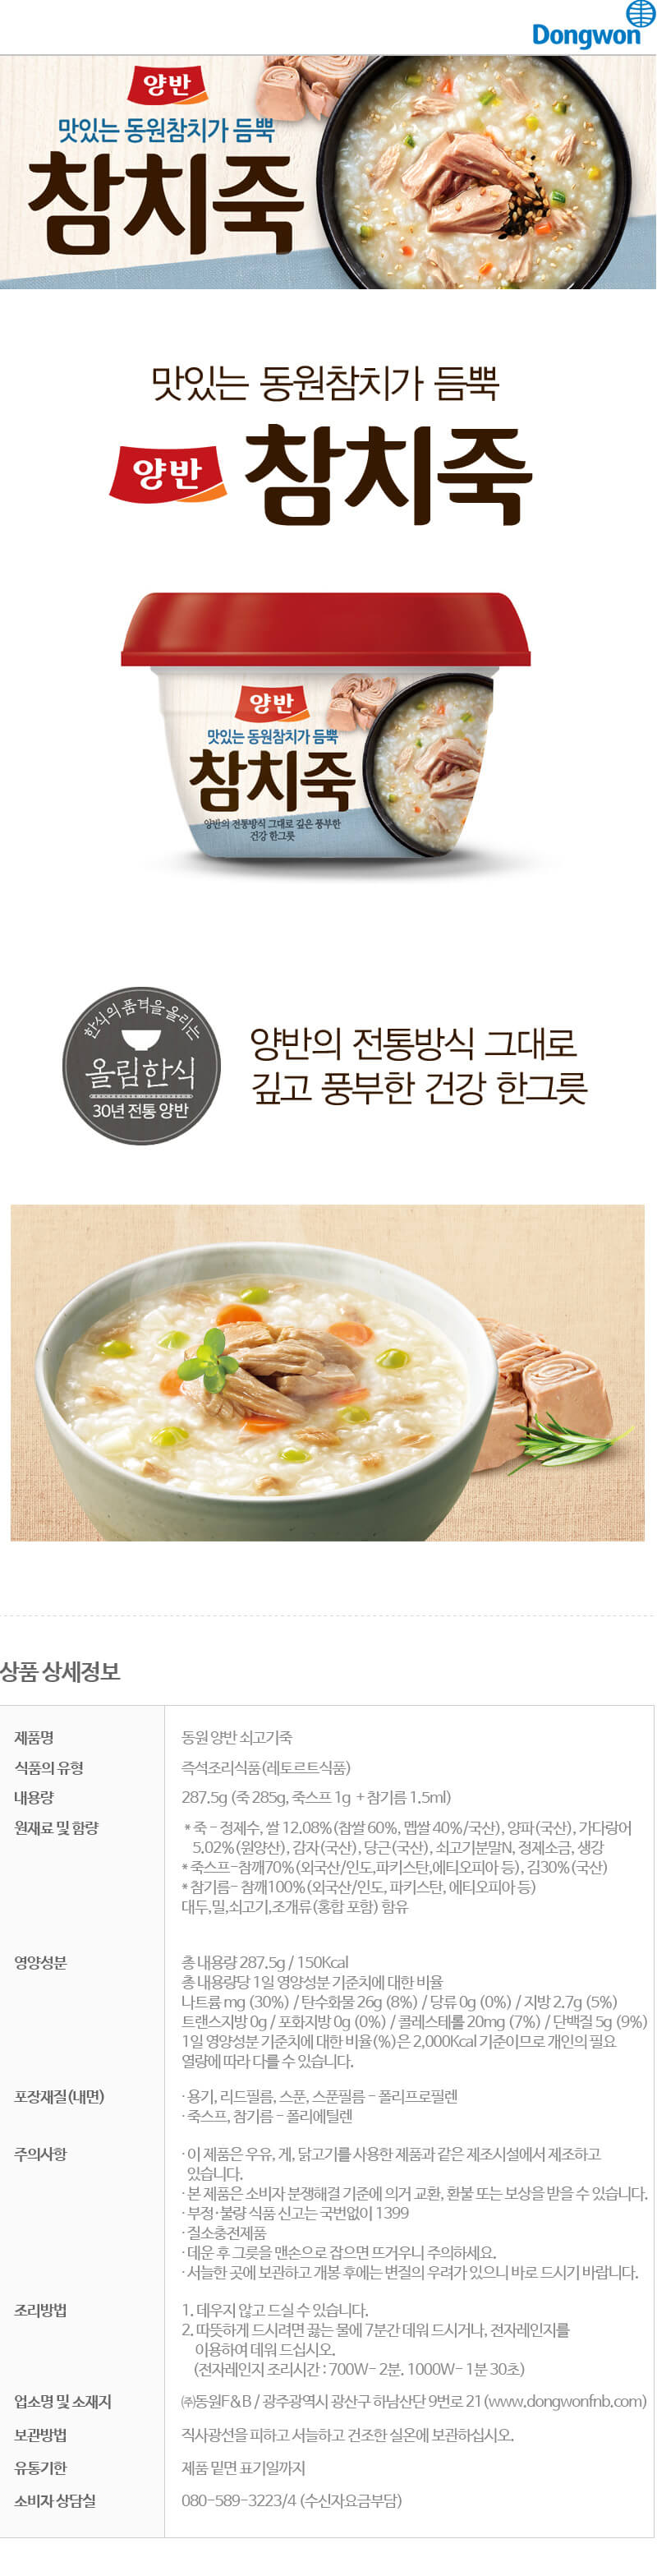 韓國食品-[Dongwon] Yangban Rice Porridge with Tuna 287.5g